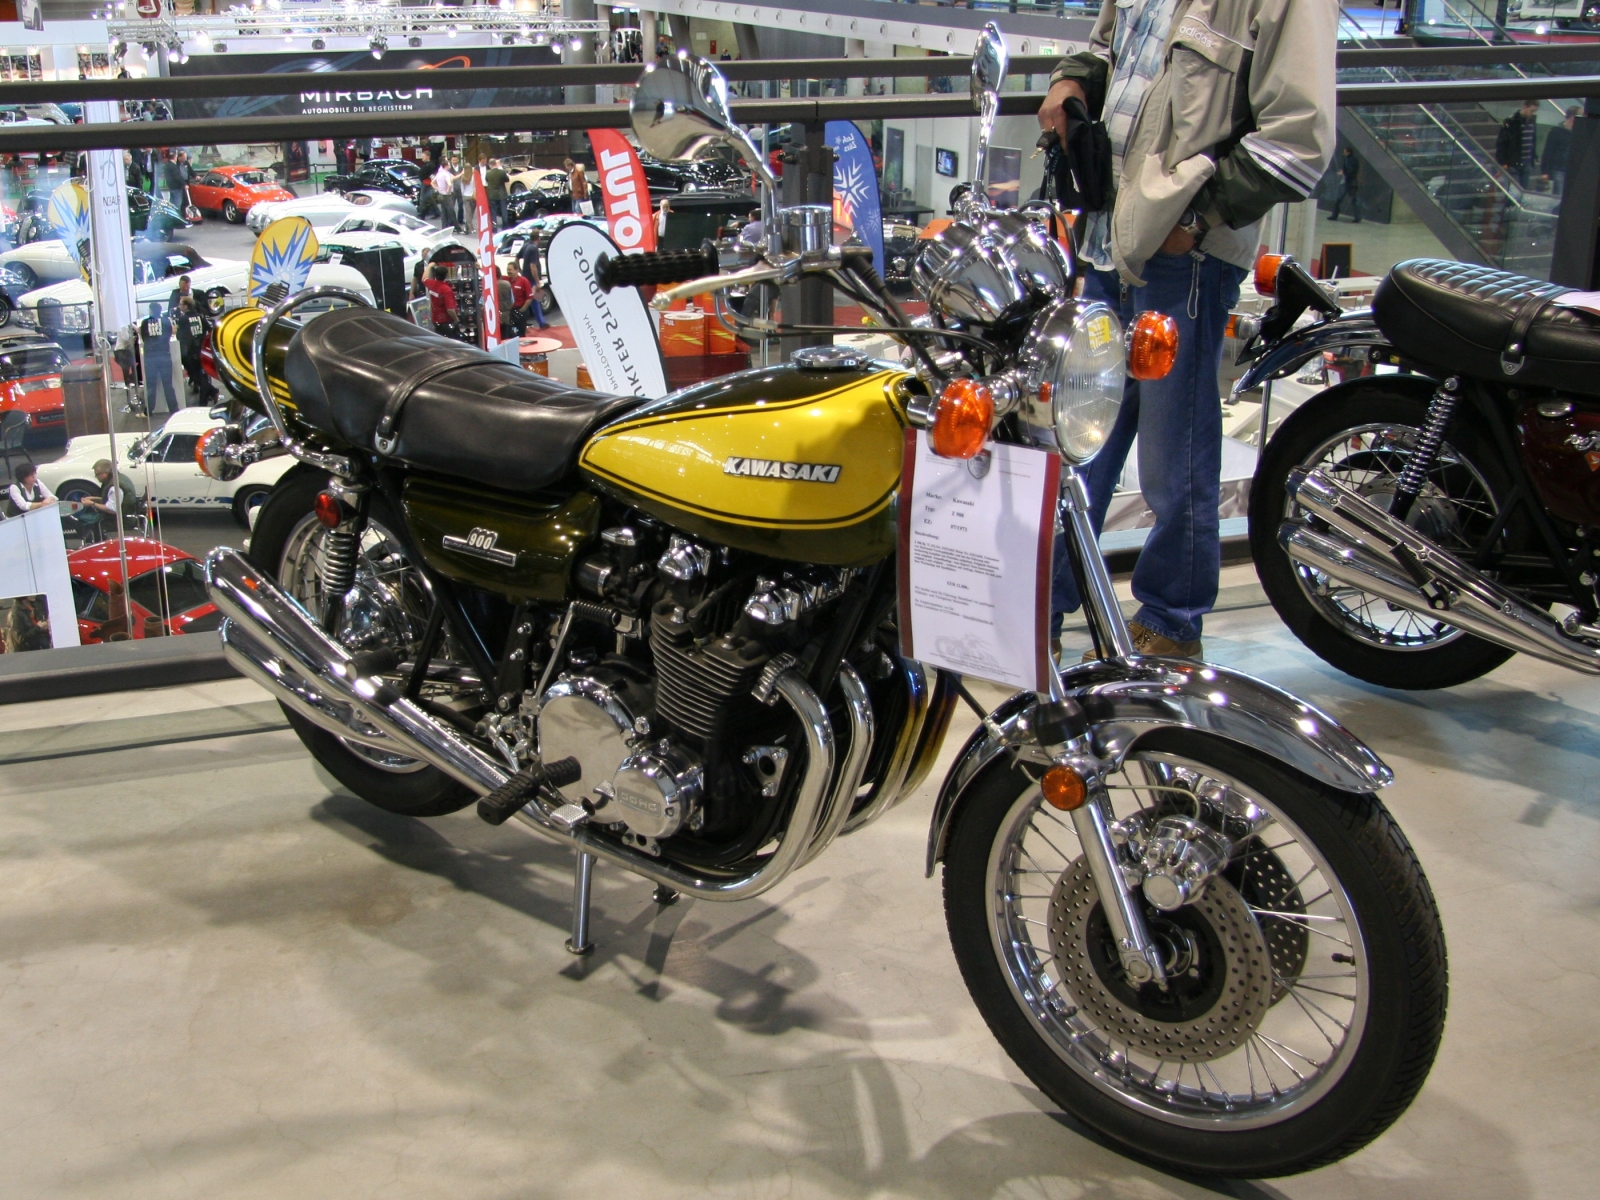 Kawasaki Z 900